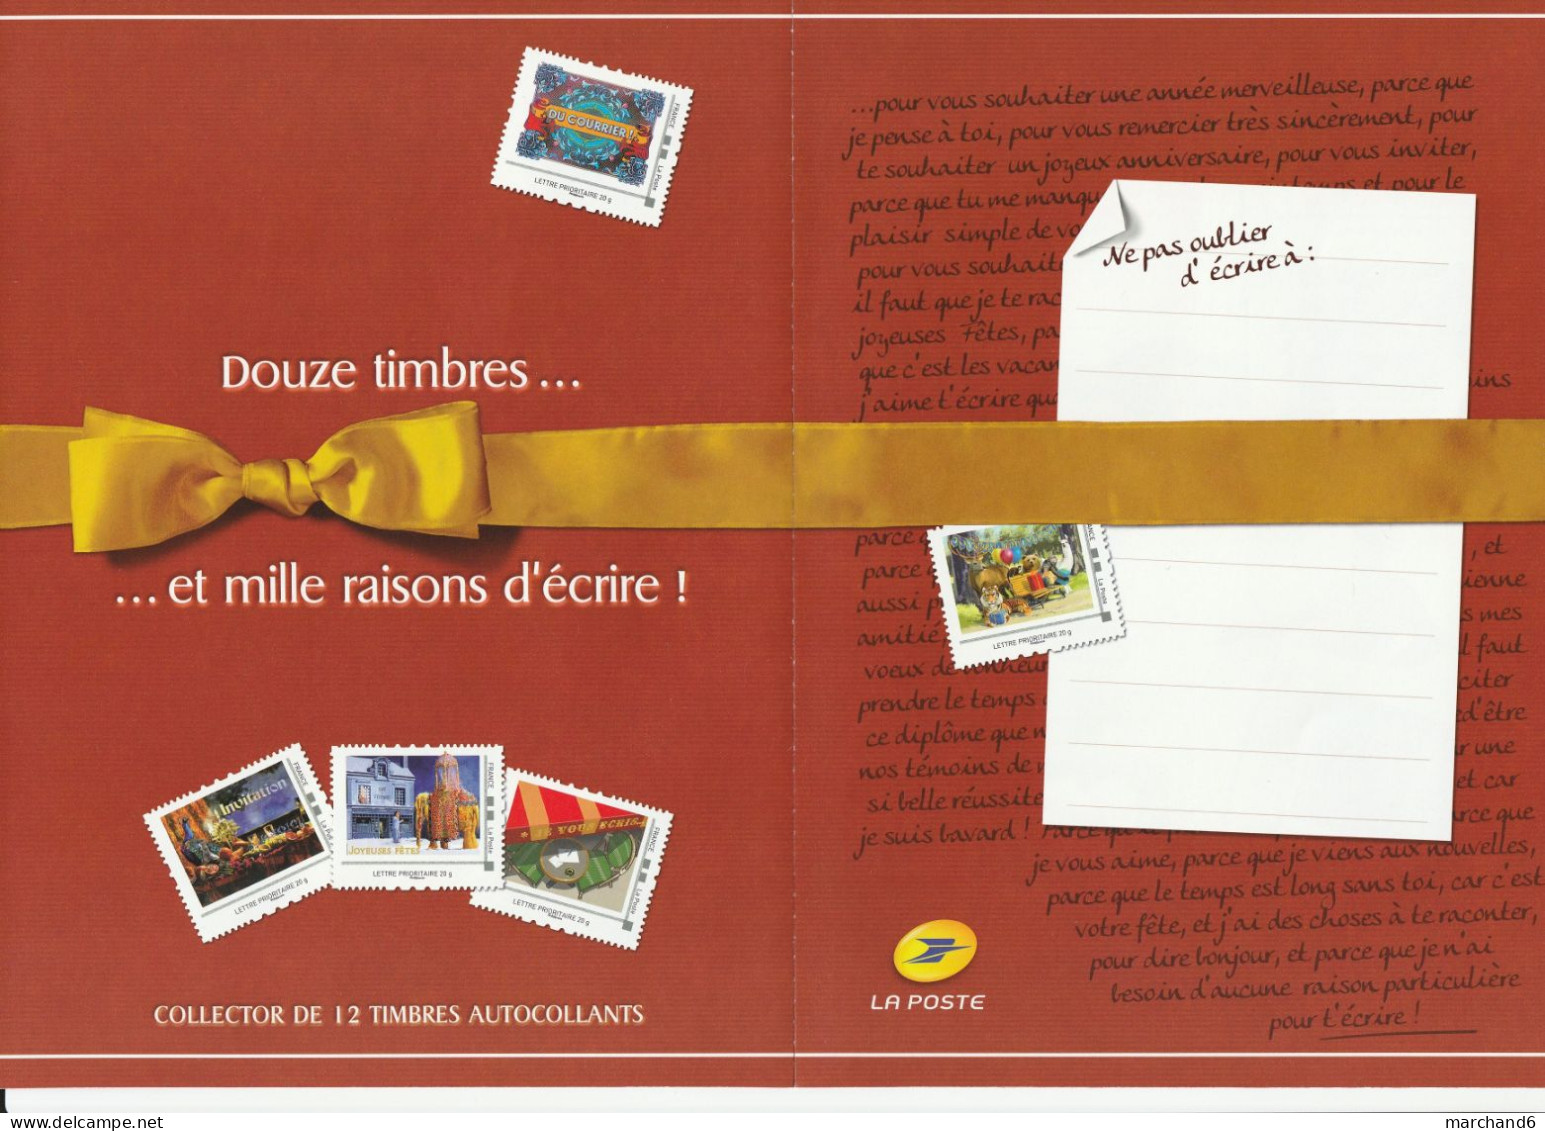 Feuillet Collector Douze Timbres Et Mille Raisons D écrire France 2013 IDT L P 20gr 12 Timbres Autoadhésifs N°246 - Collectors